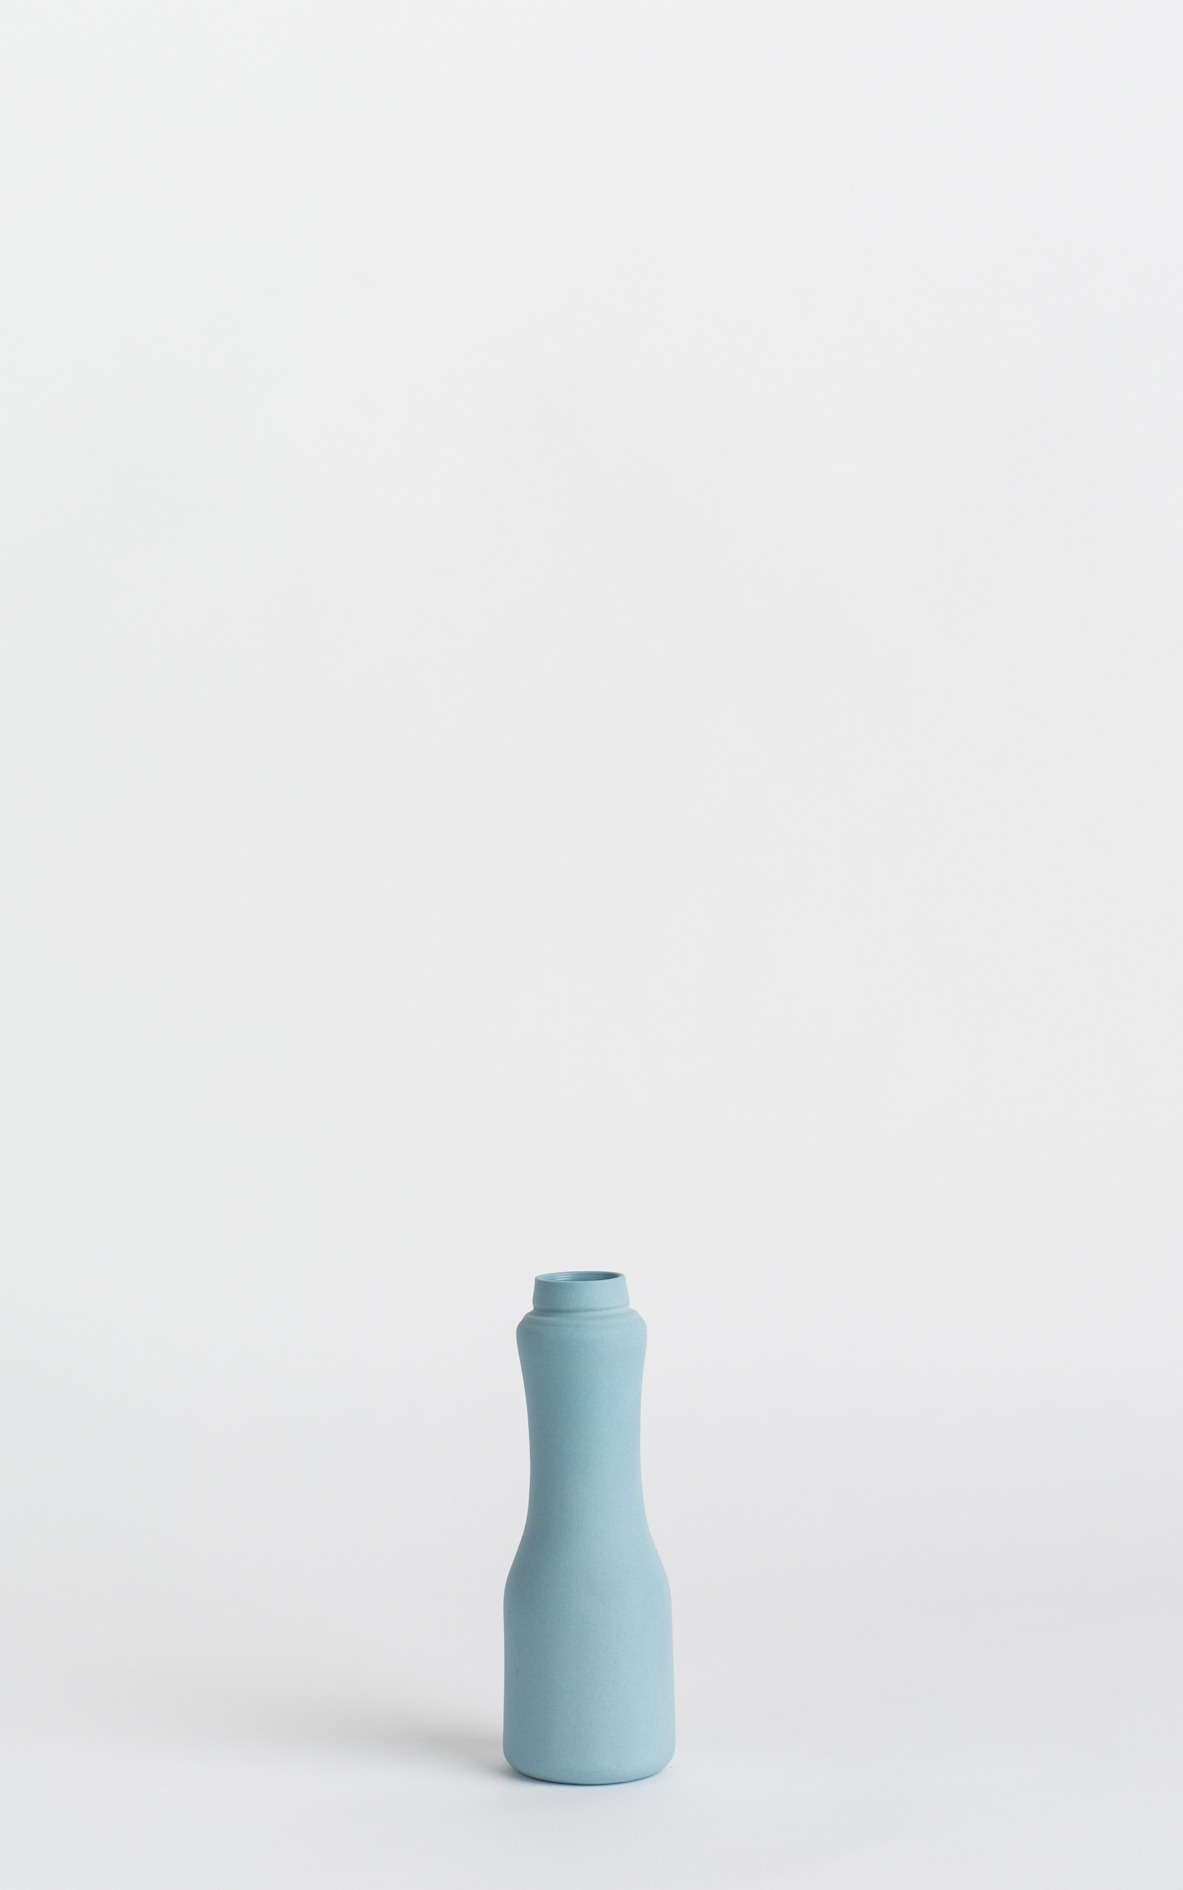 bottle vase #6 dark blue